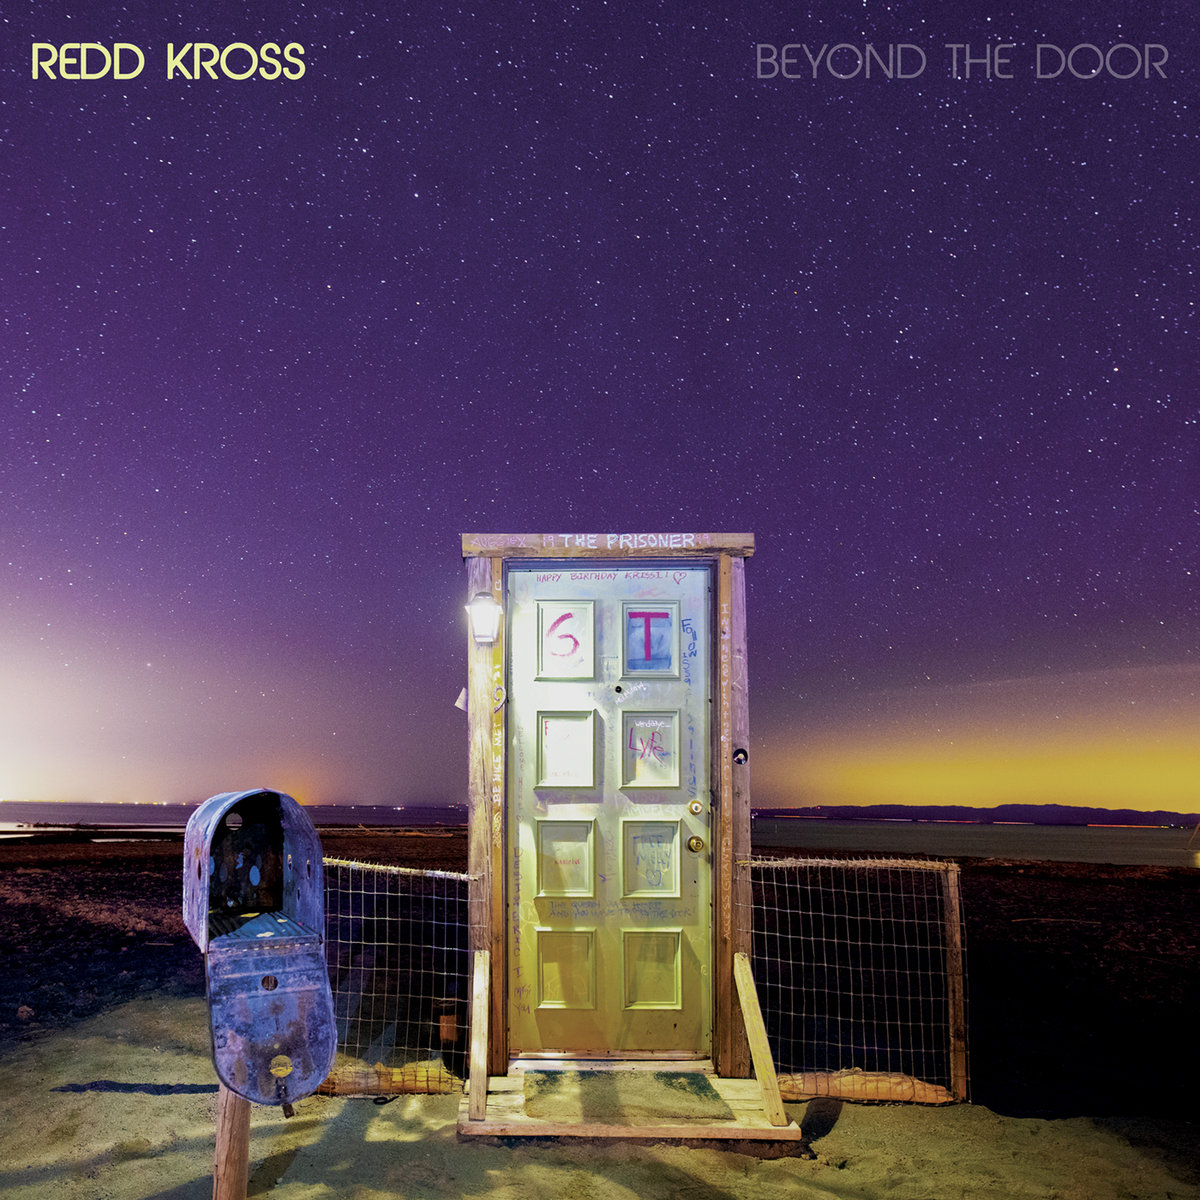 Redd Kross - Beyond the door (2019)